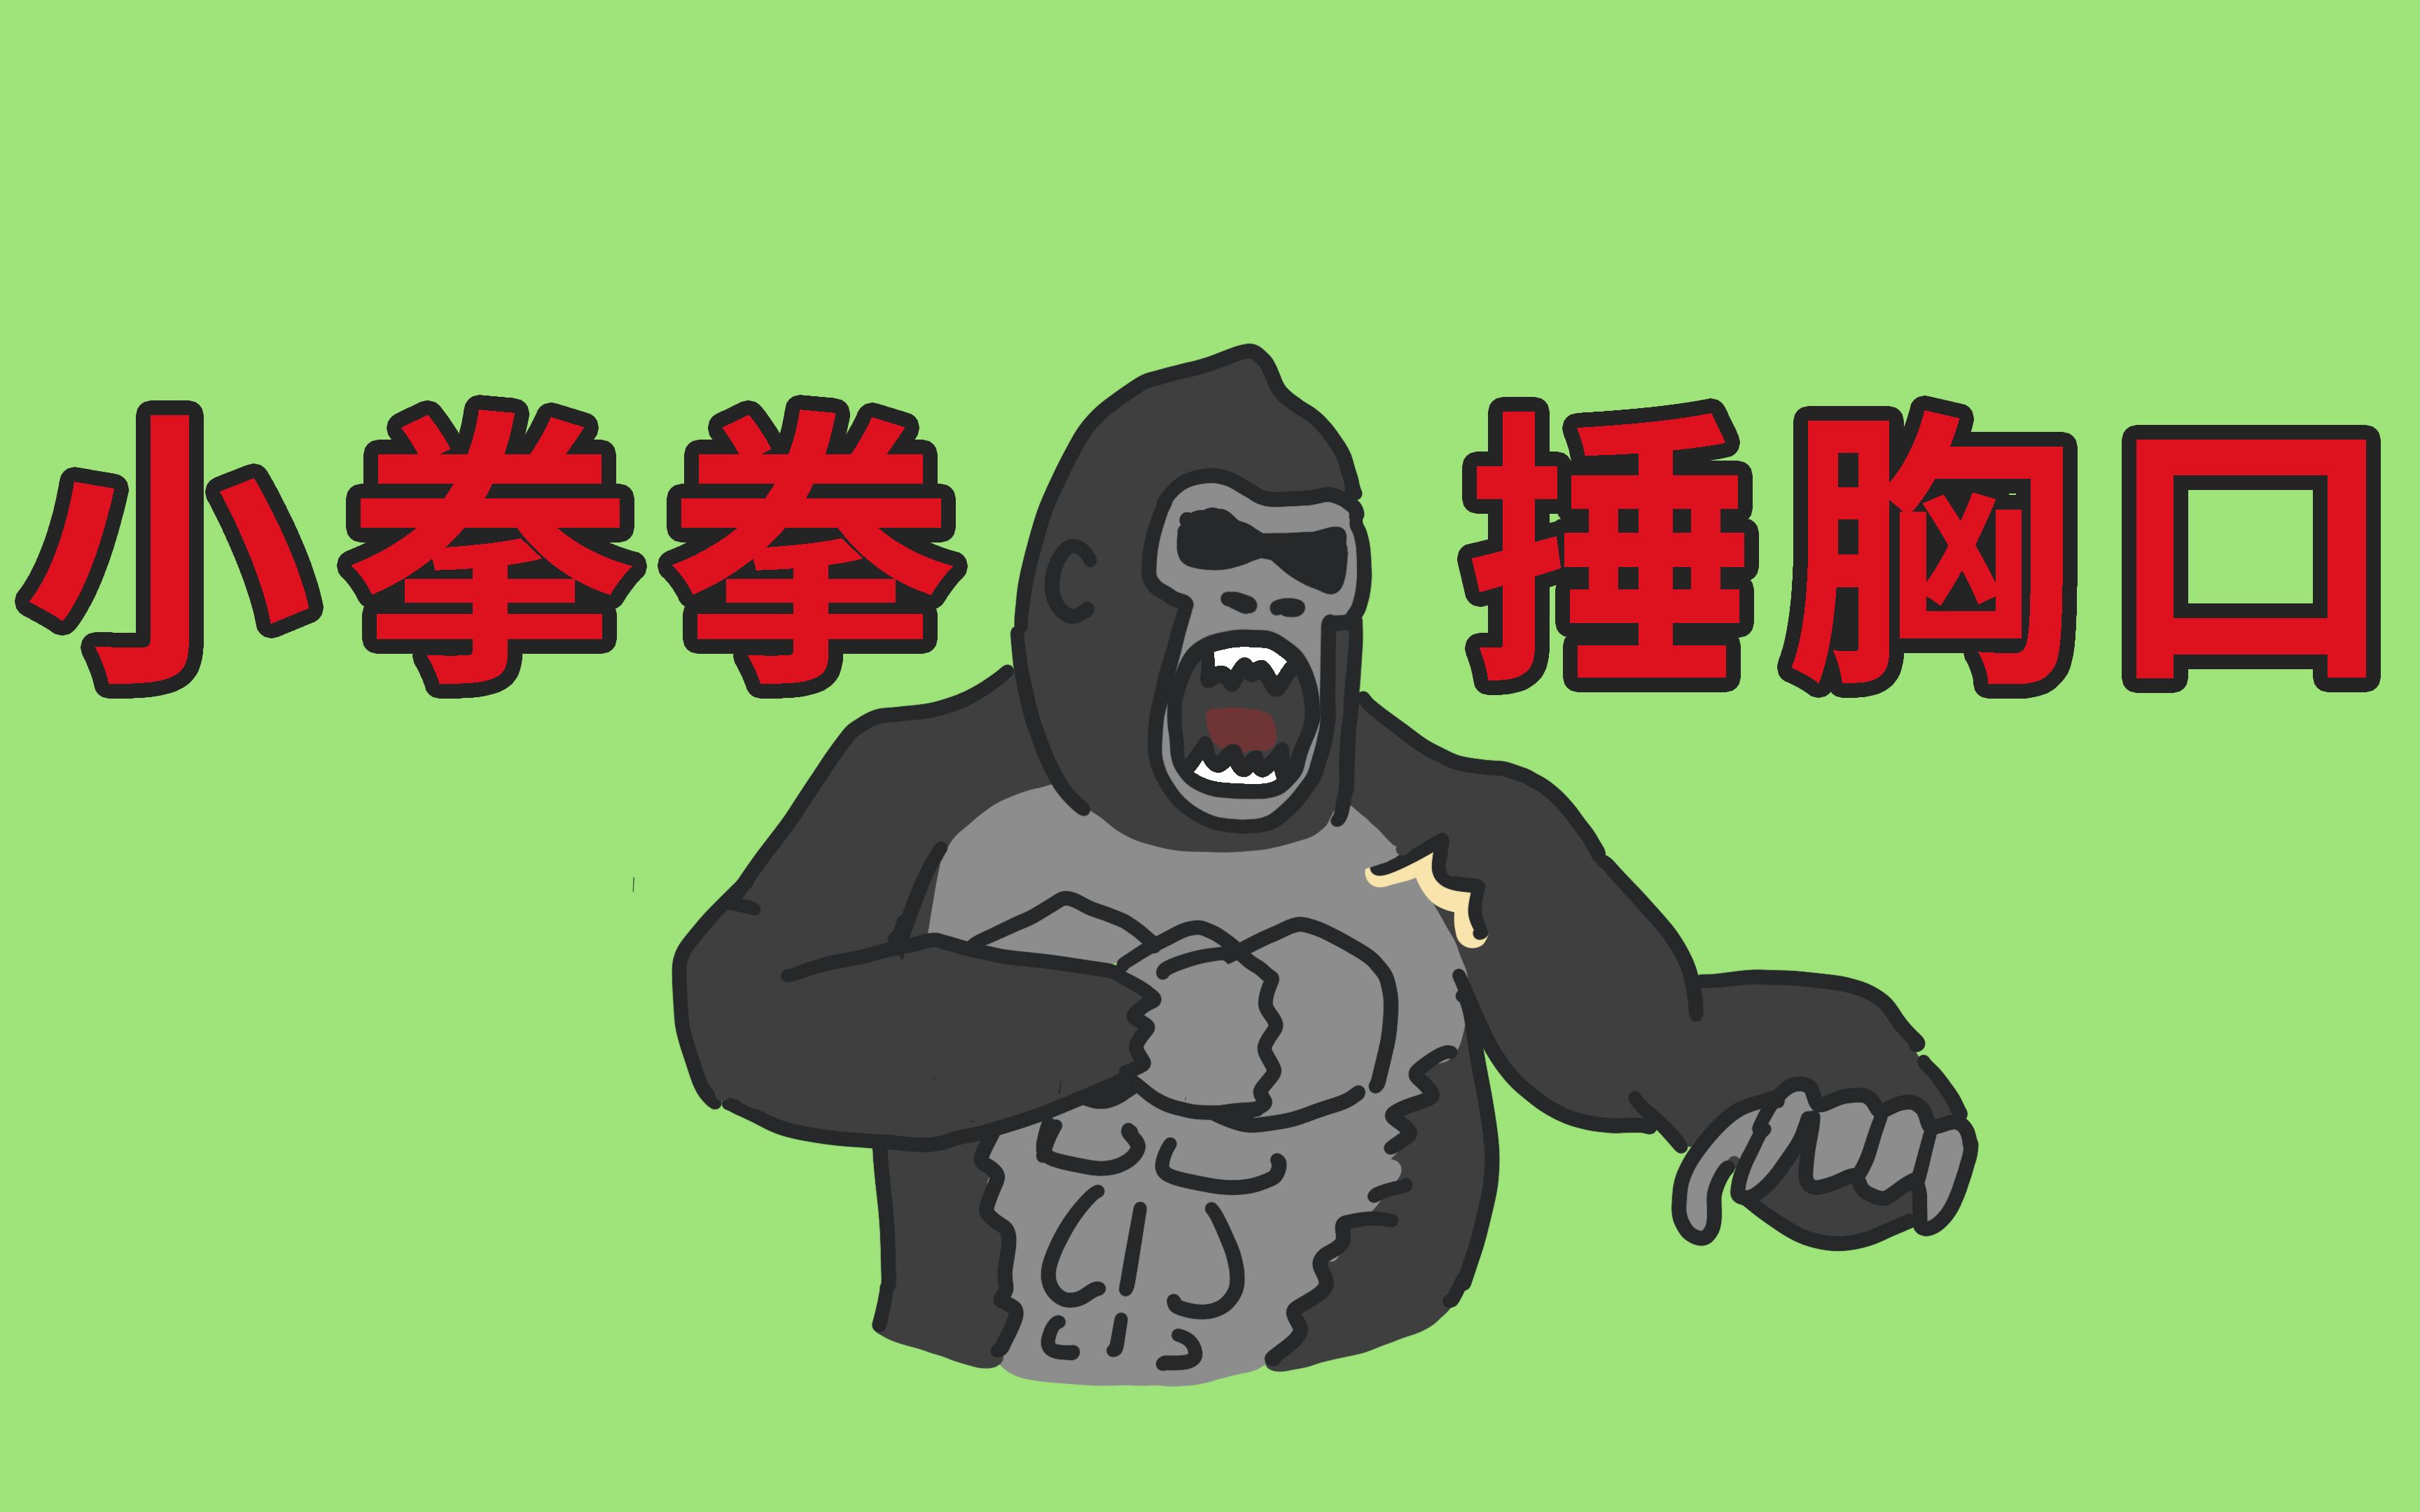 猩猩捶胸是因为生气吗?